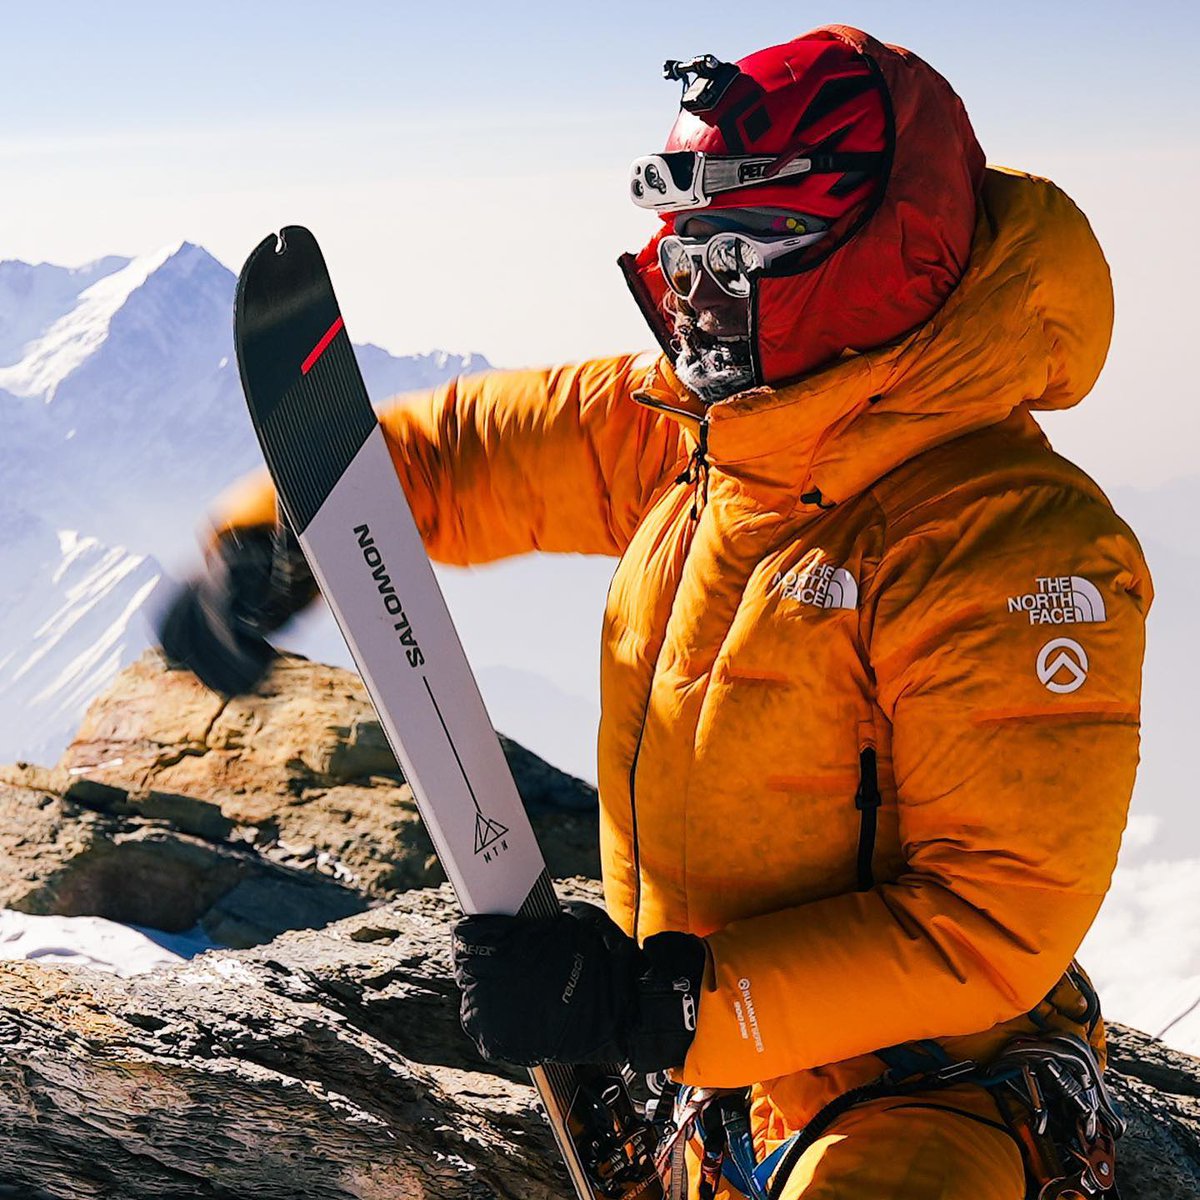 🚨🏔Dans quelques semaines en Himalaya, le grimpeur Bartek Ziemski tentera de gravir sans oxygène et de descendre à ski le Kangchenjunga, troisième montagne la plus haute de la terre. Note : ce possible exploit serait une première ! Bon courage Bartek, et à très vite! #alpinisme